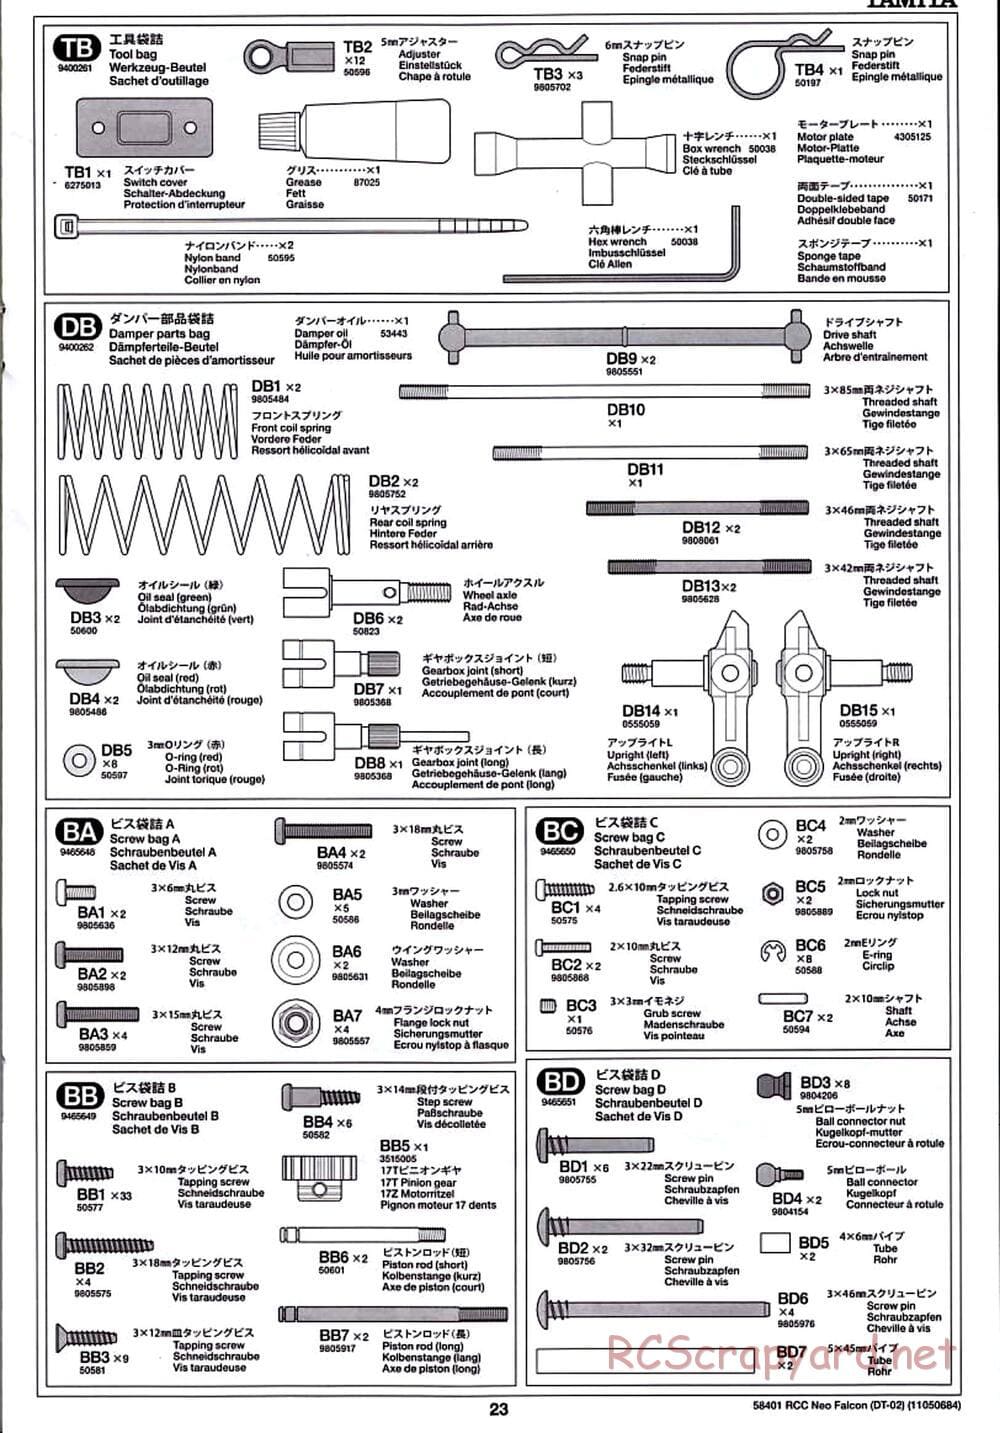 Tamiya - Neo Falcon Chassis - Manual - Page 23